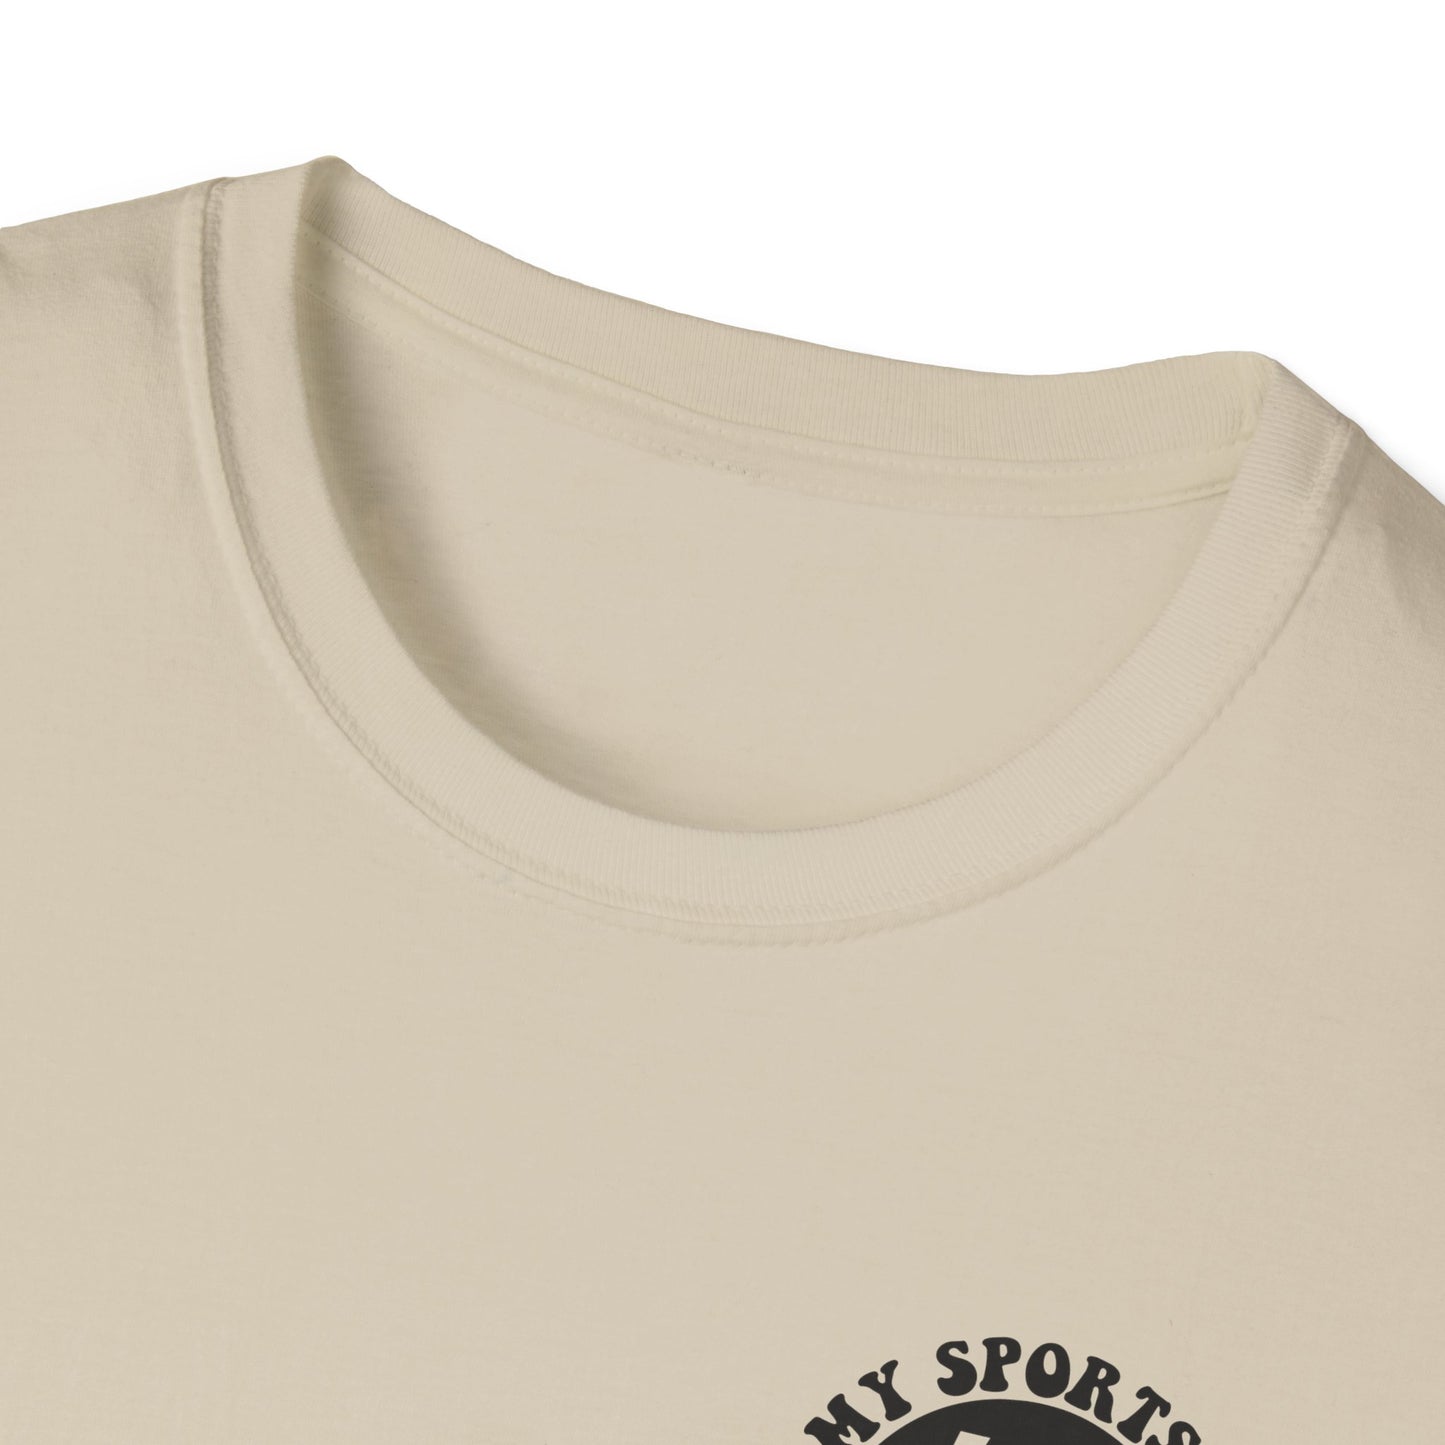 Sports Mom ERA - Unisex Softstyle T-Shirt